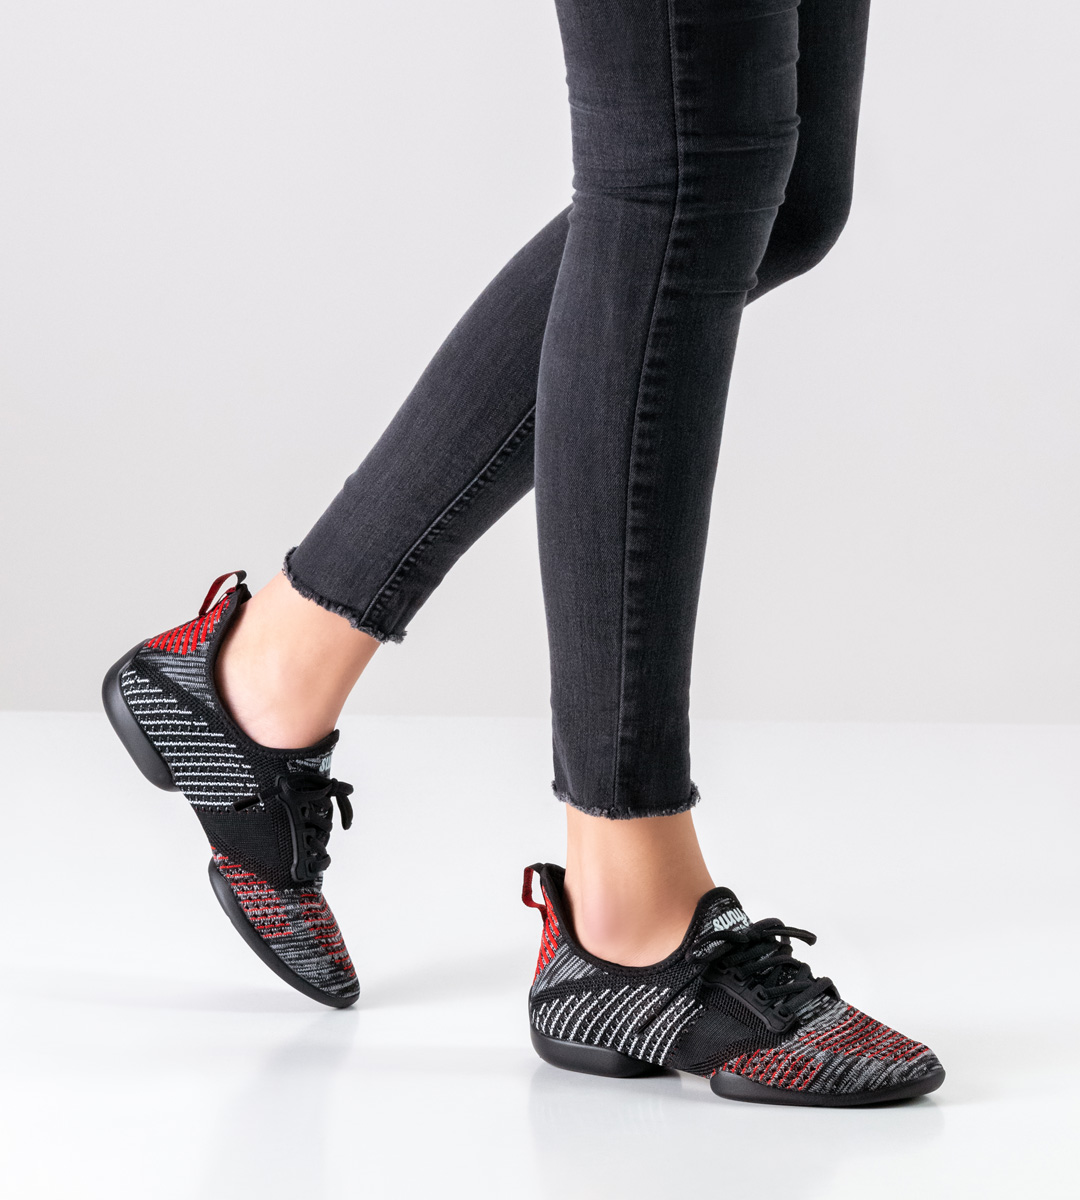 Damentanz-Sneaker in schwarz-rot-weiss-grau von Suny